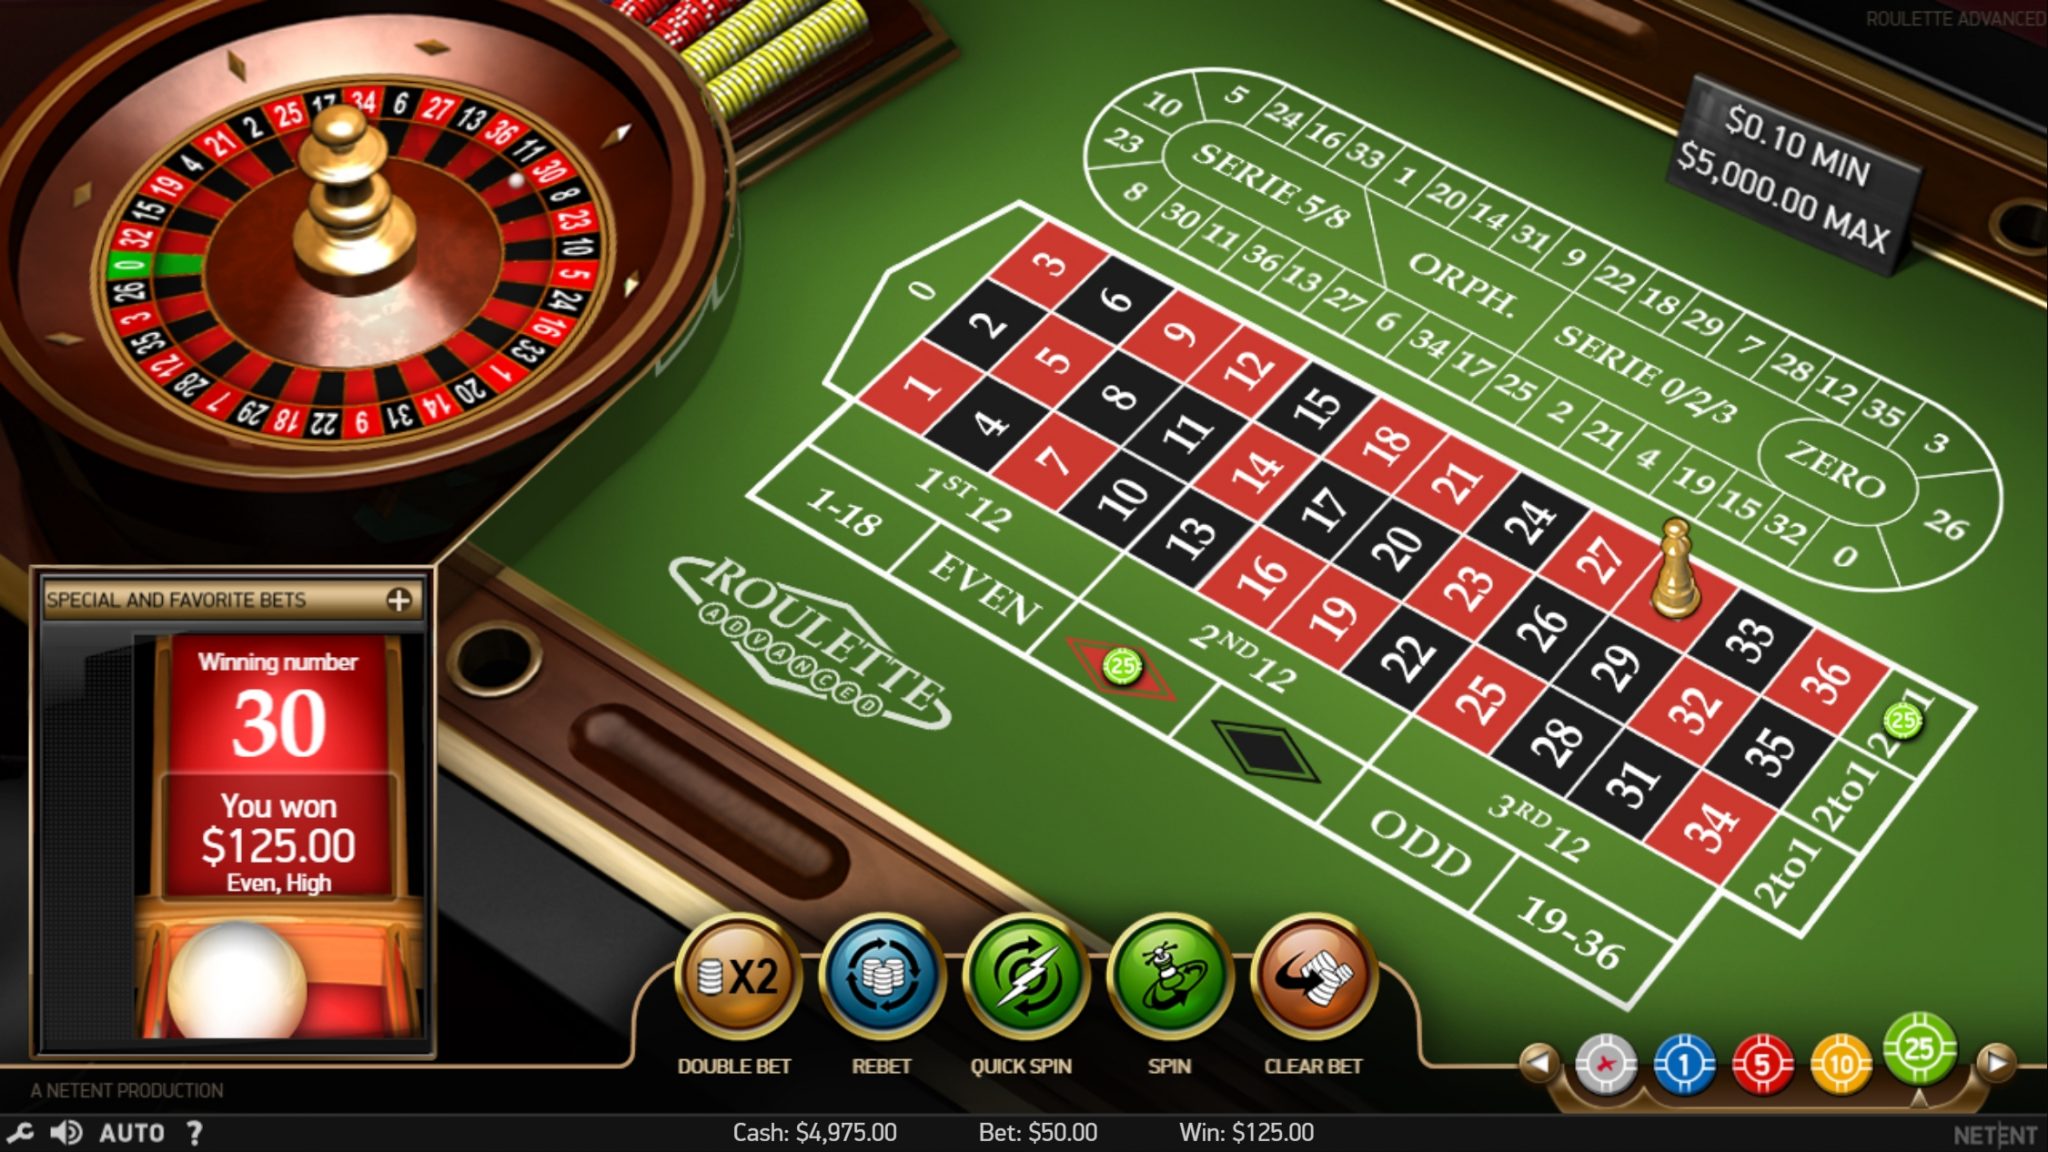 Manche Leute sind mit spiele Casino cutlasswp.com ausgezeichnet und manche nicht - Welcher bist du?